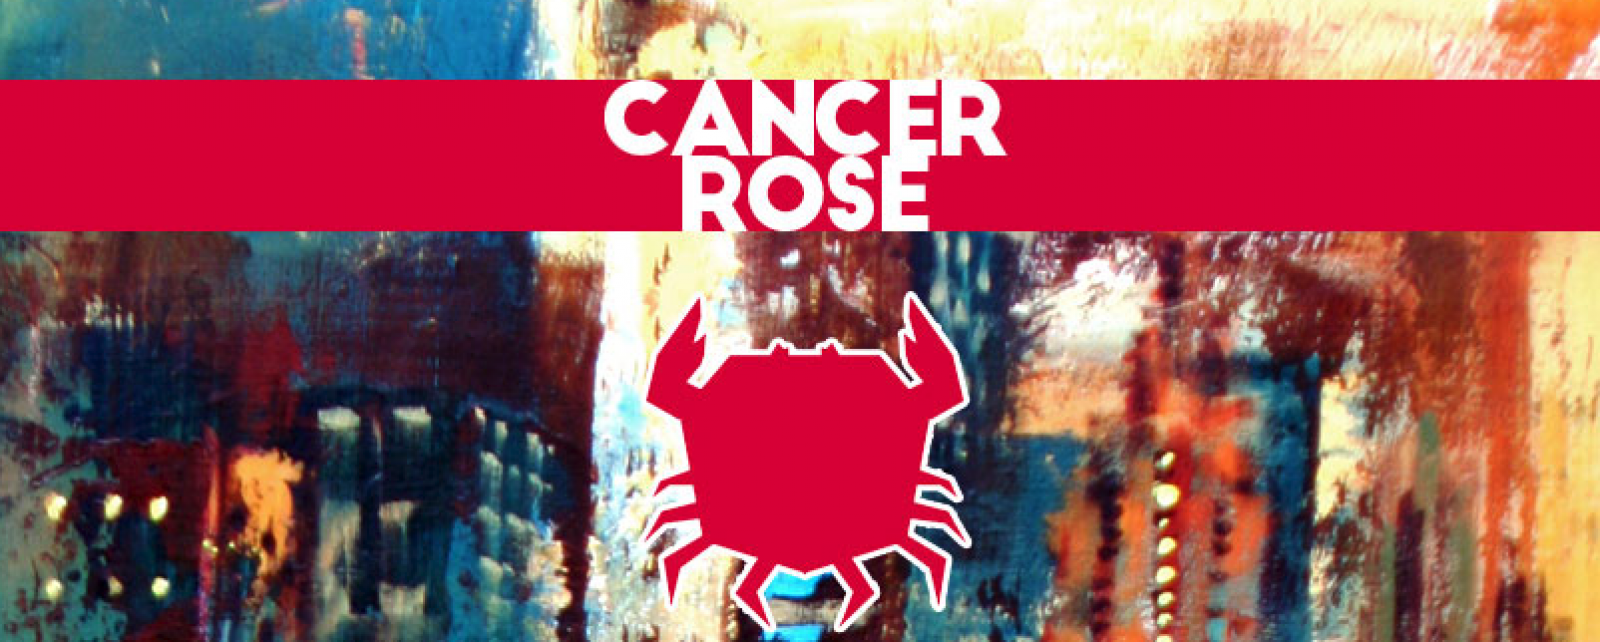 Cancer Rose